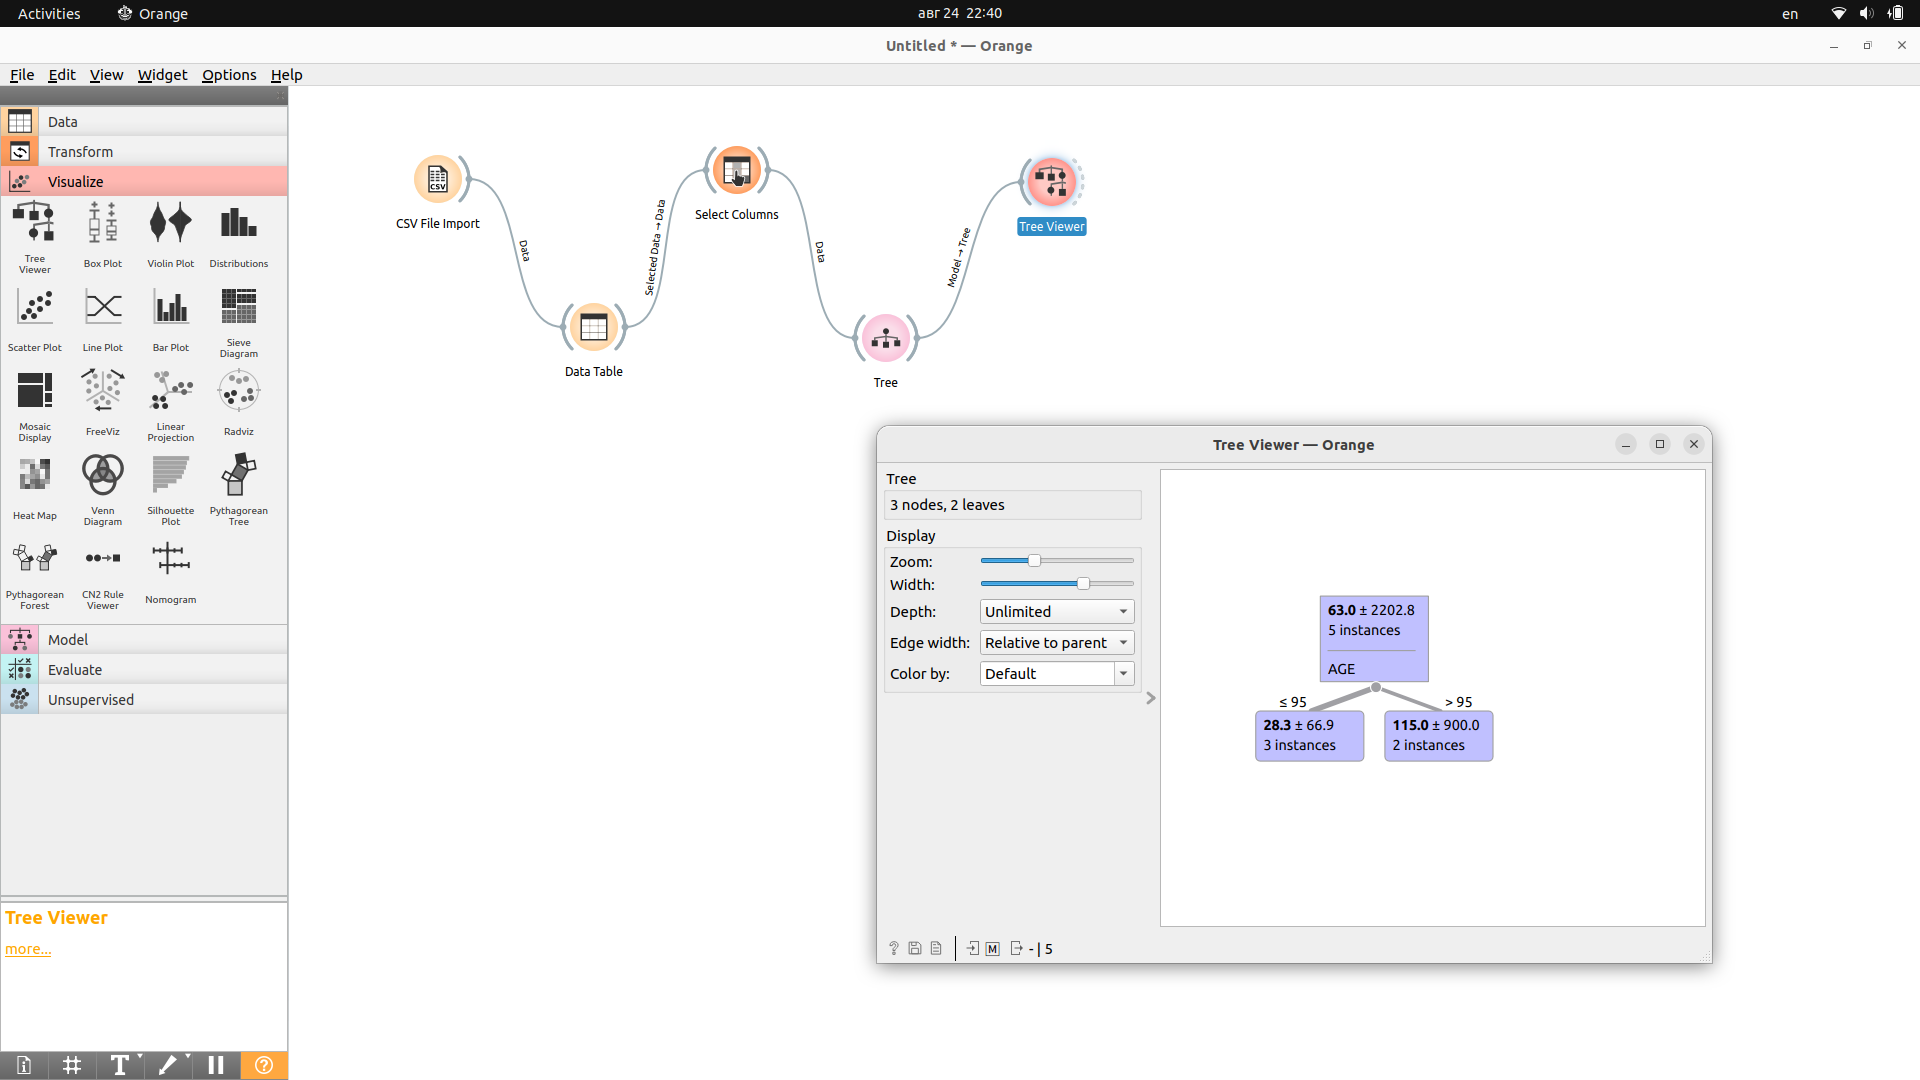 Интерфейс Orange с алгоритмом построения дерева решений по характеристикам и показателям пользователей Клуба